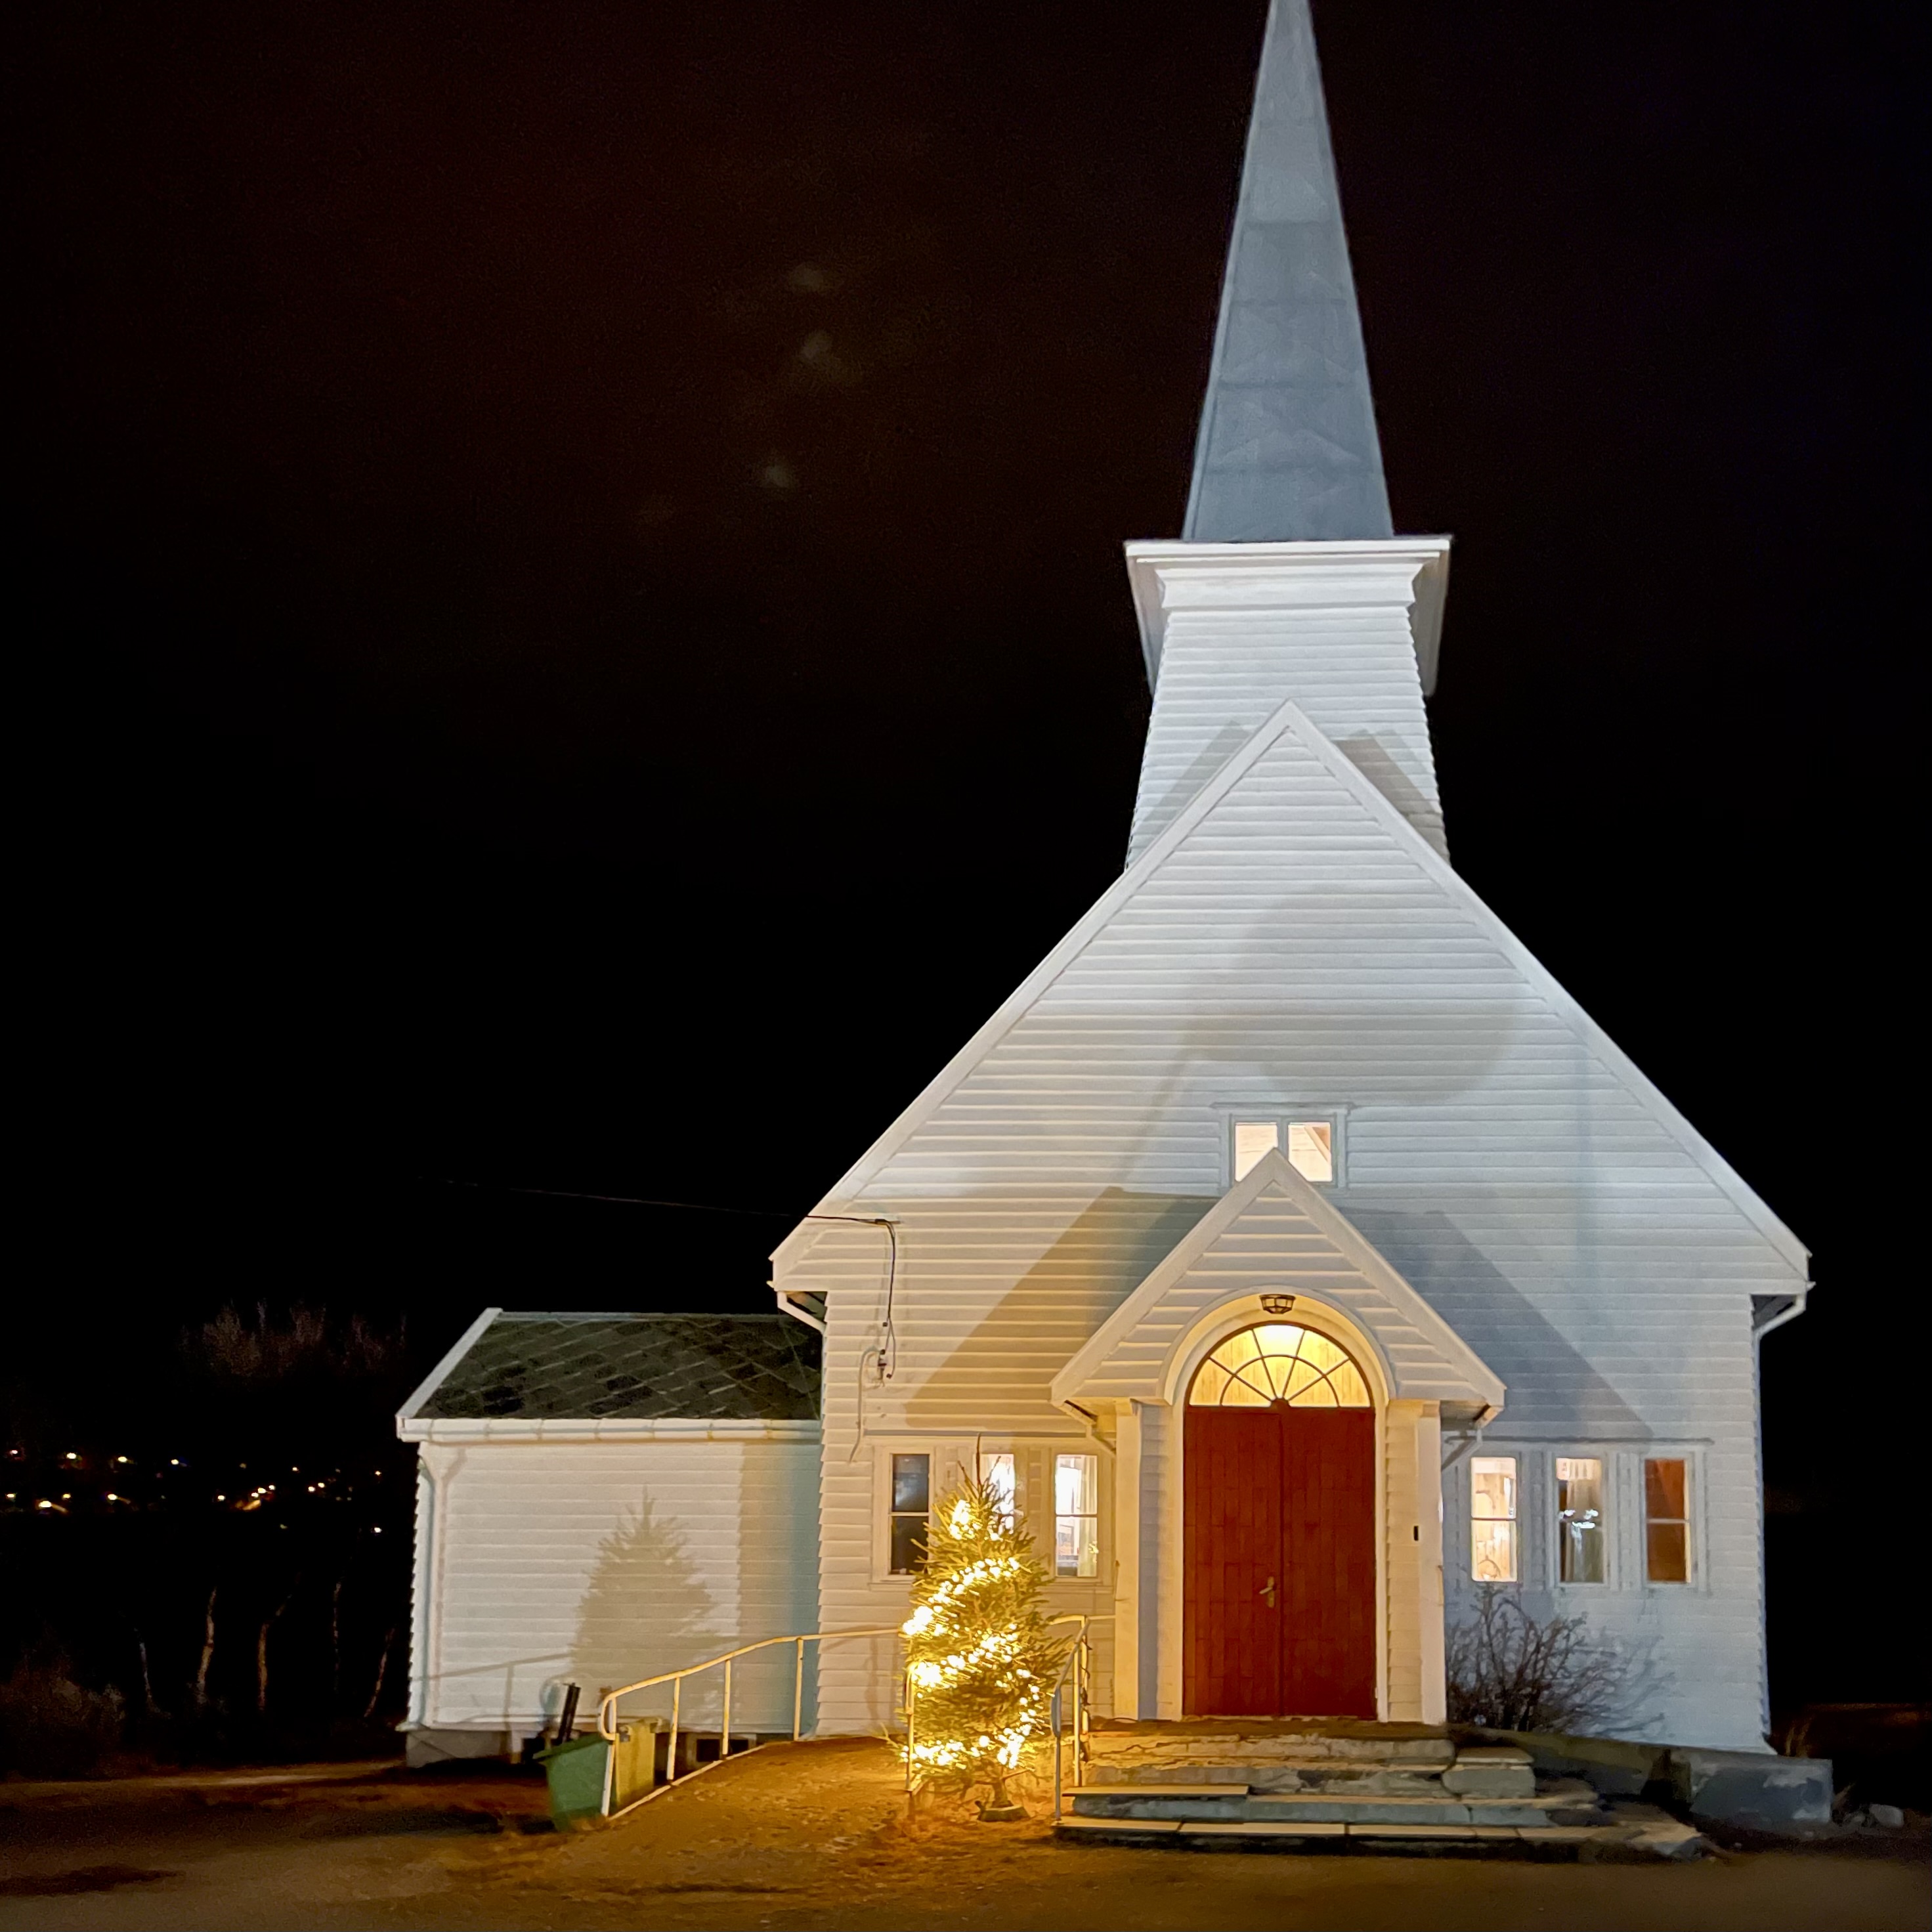 Vit kyrka med ljus på kvällen.